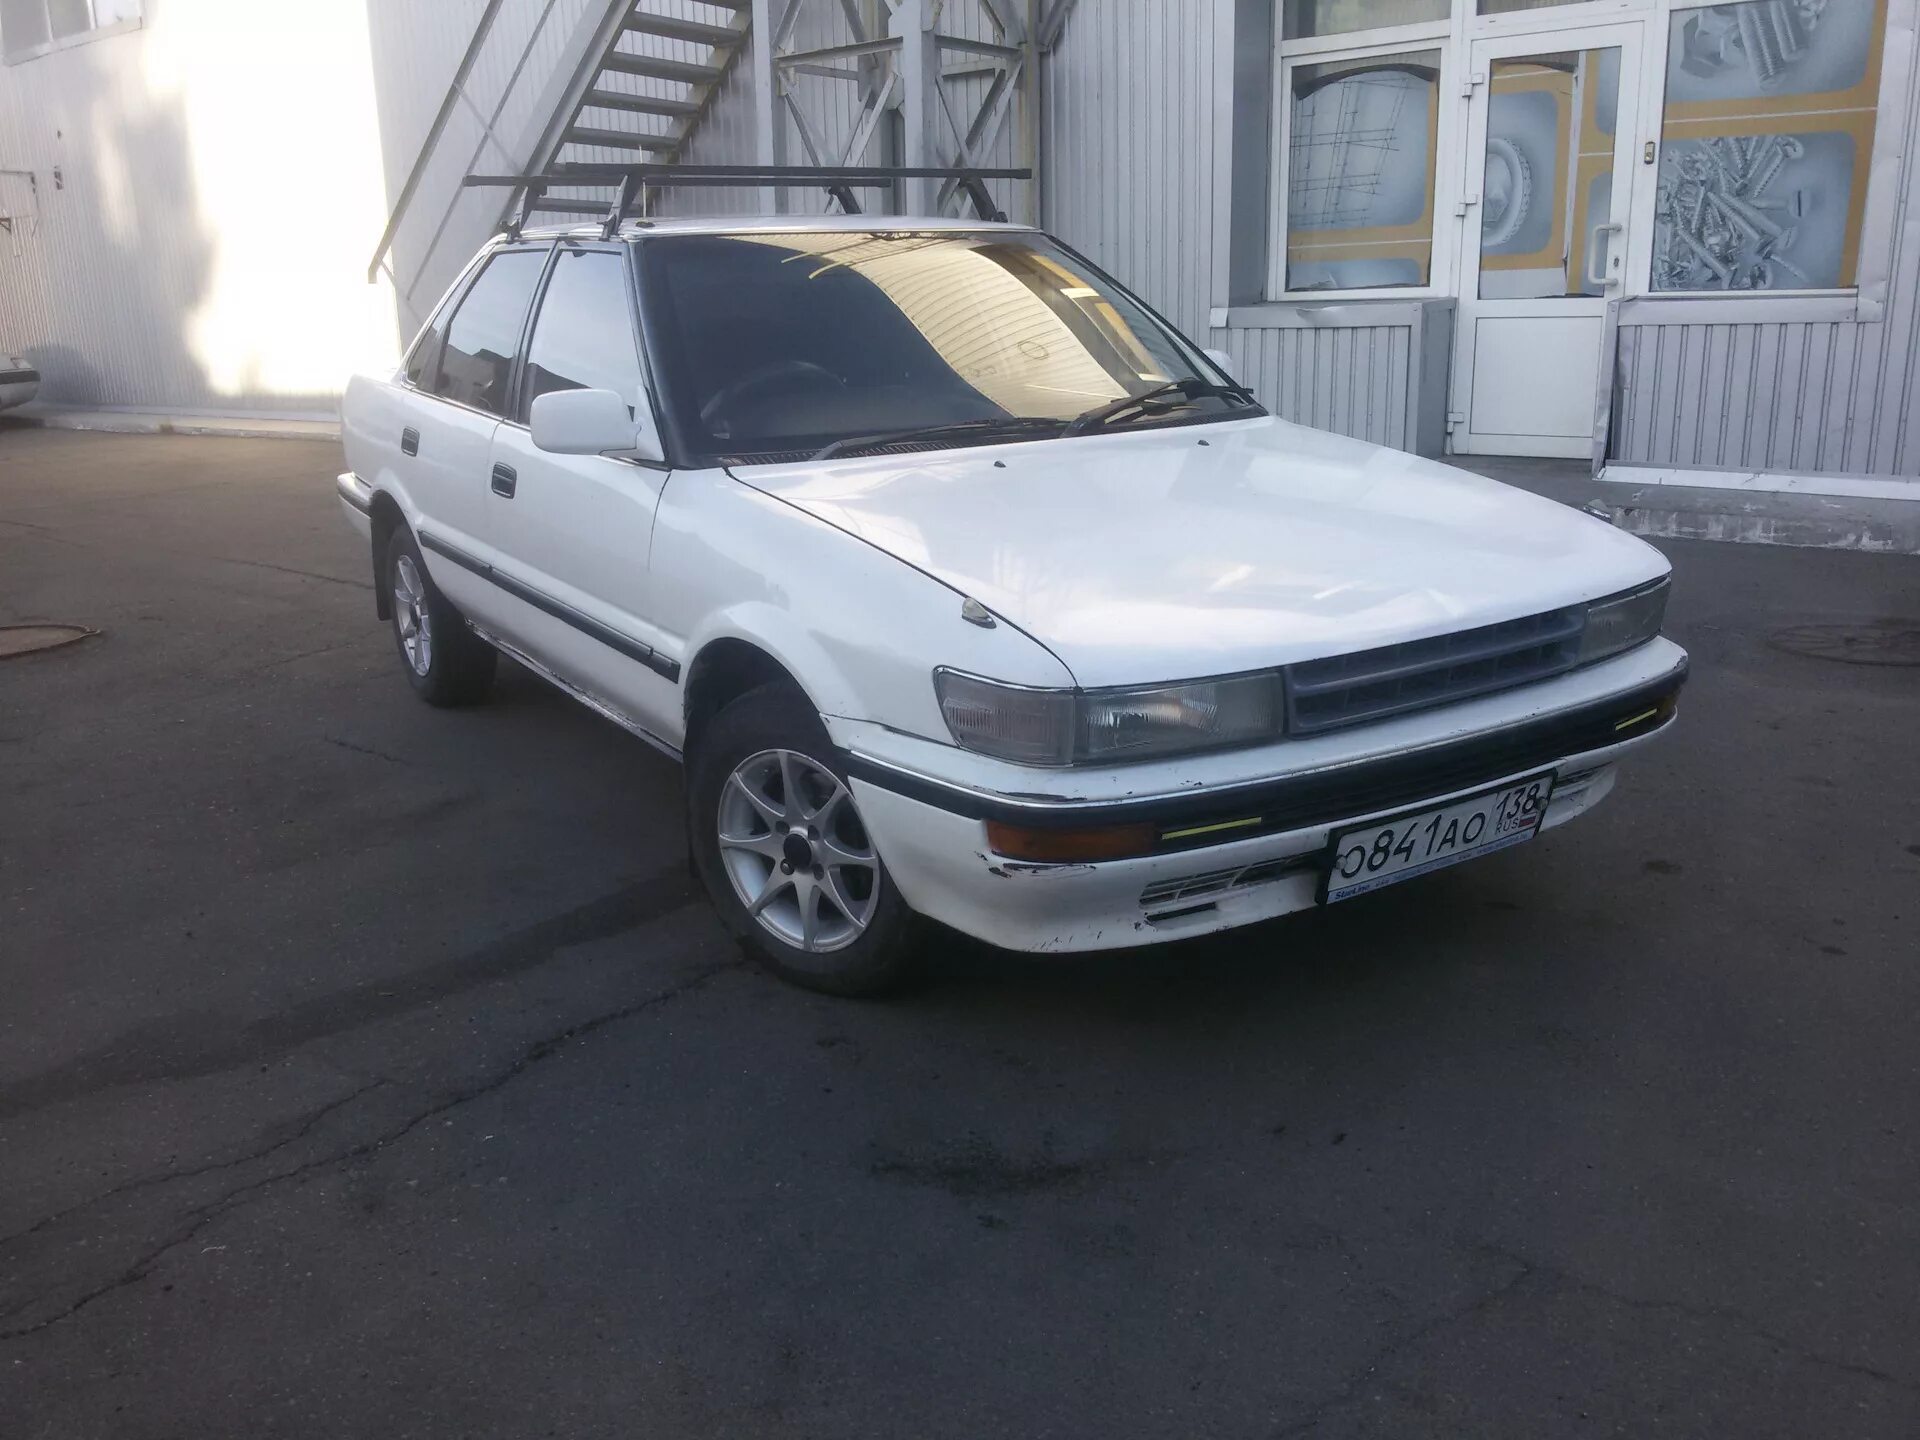 Toyota Sprinter 1988. Тойота Спринтер 1988. Тойота Спринтер 1988г. Toyota Toyota Sprinter, 1988 год.